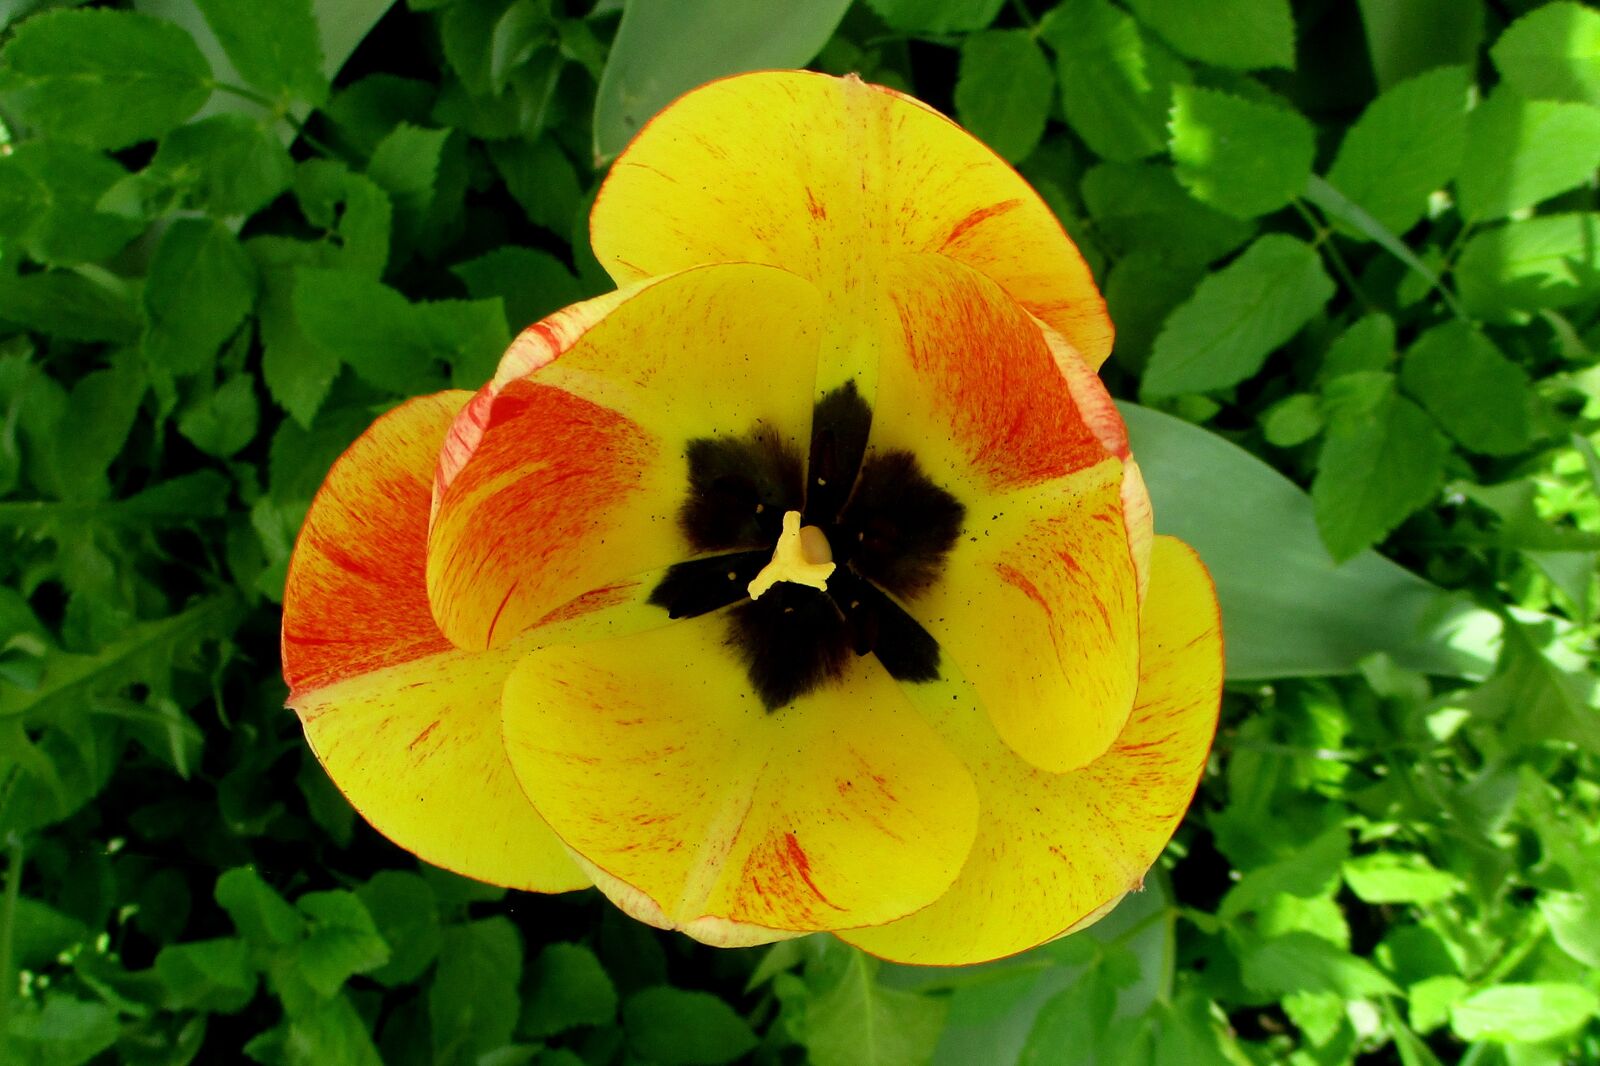 Canon IXUS 177 sample photo. Tulip, spring, garden photography